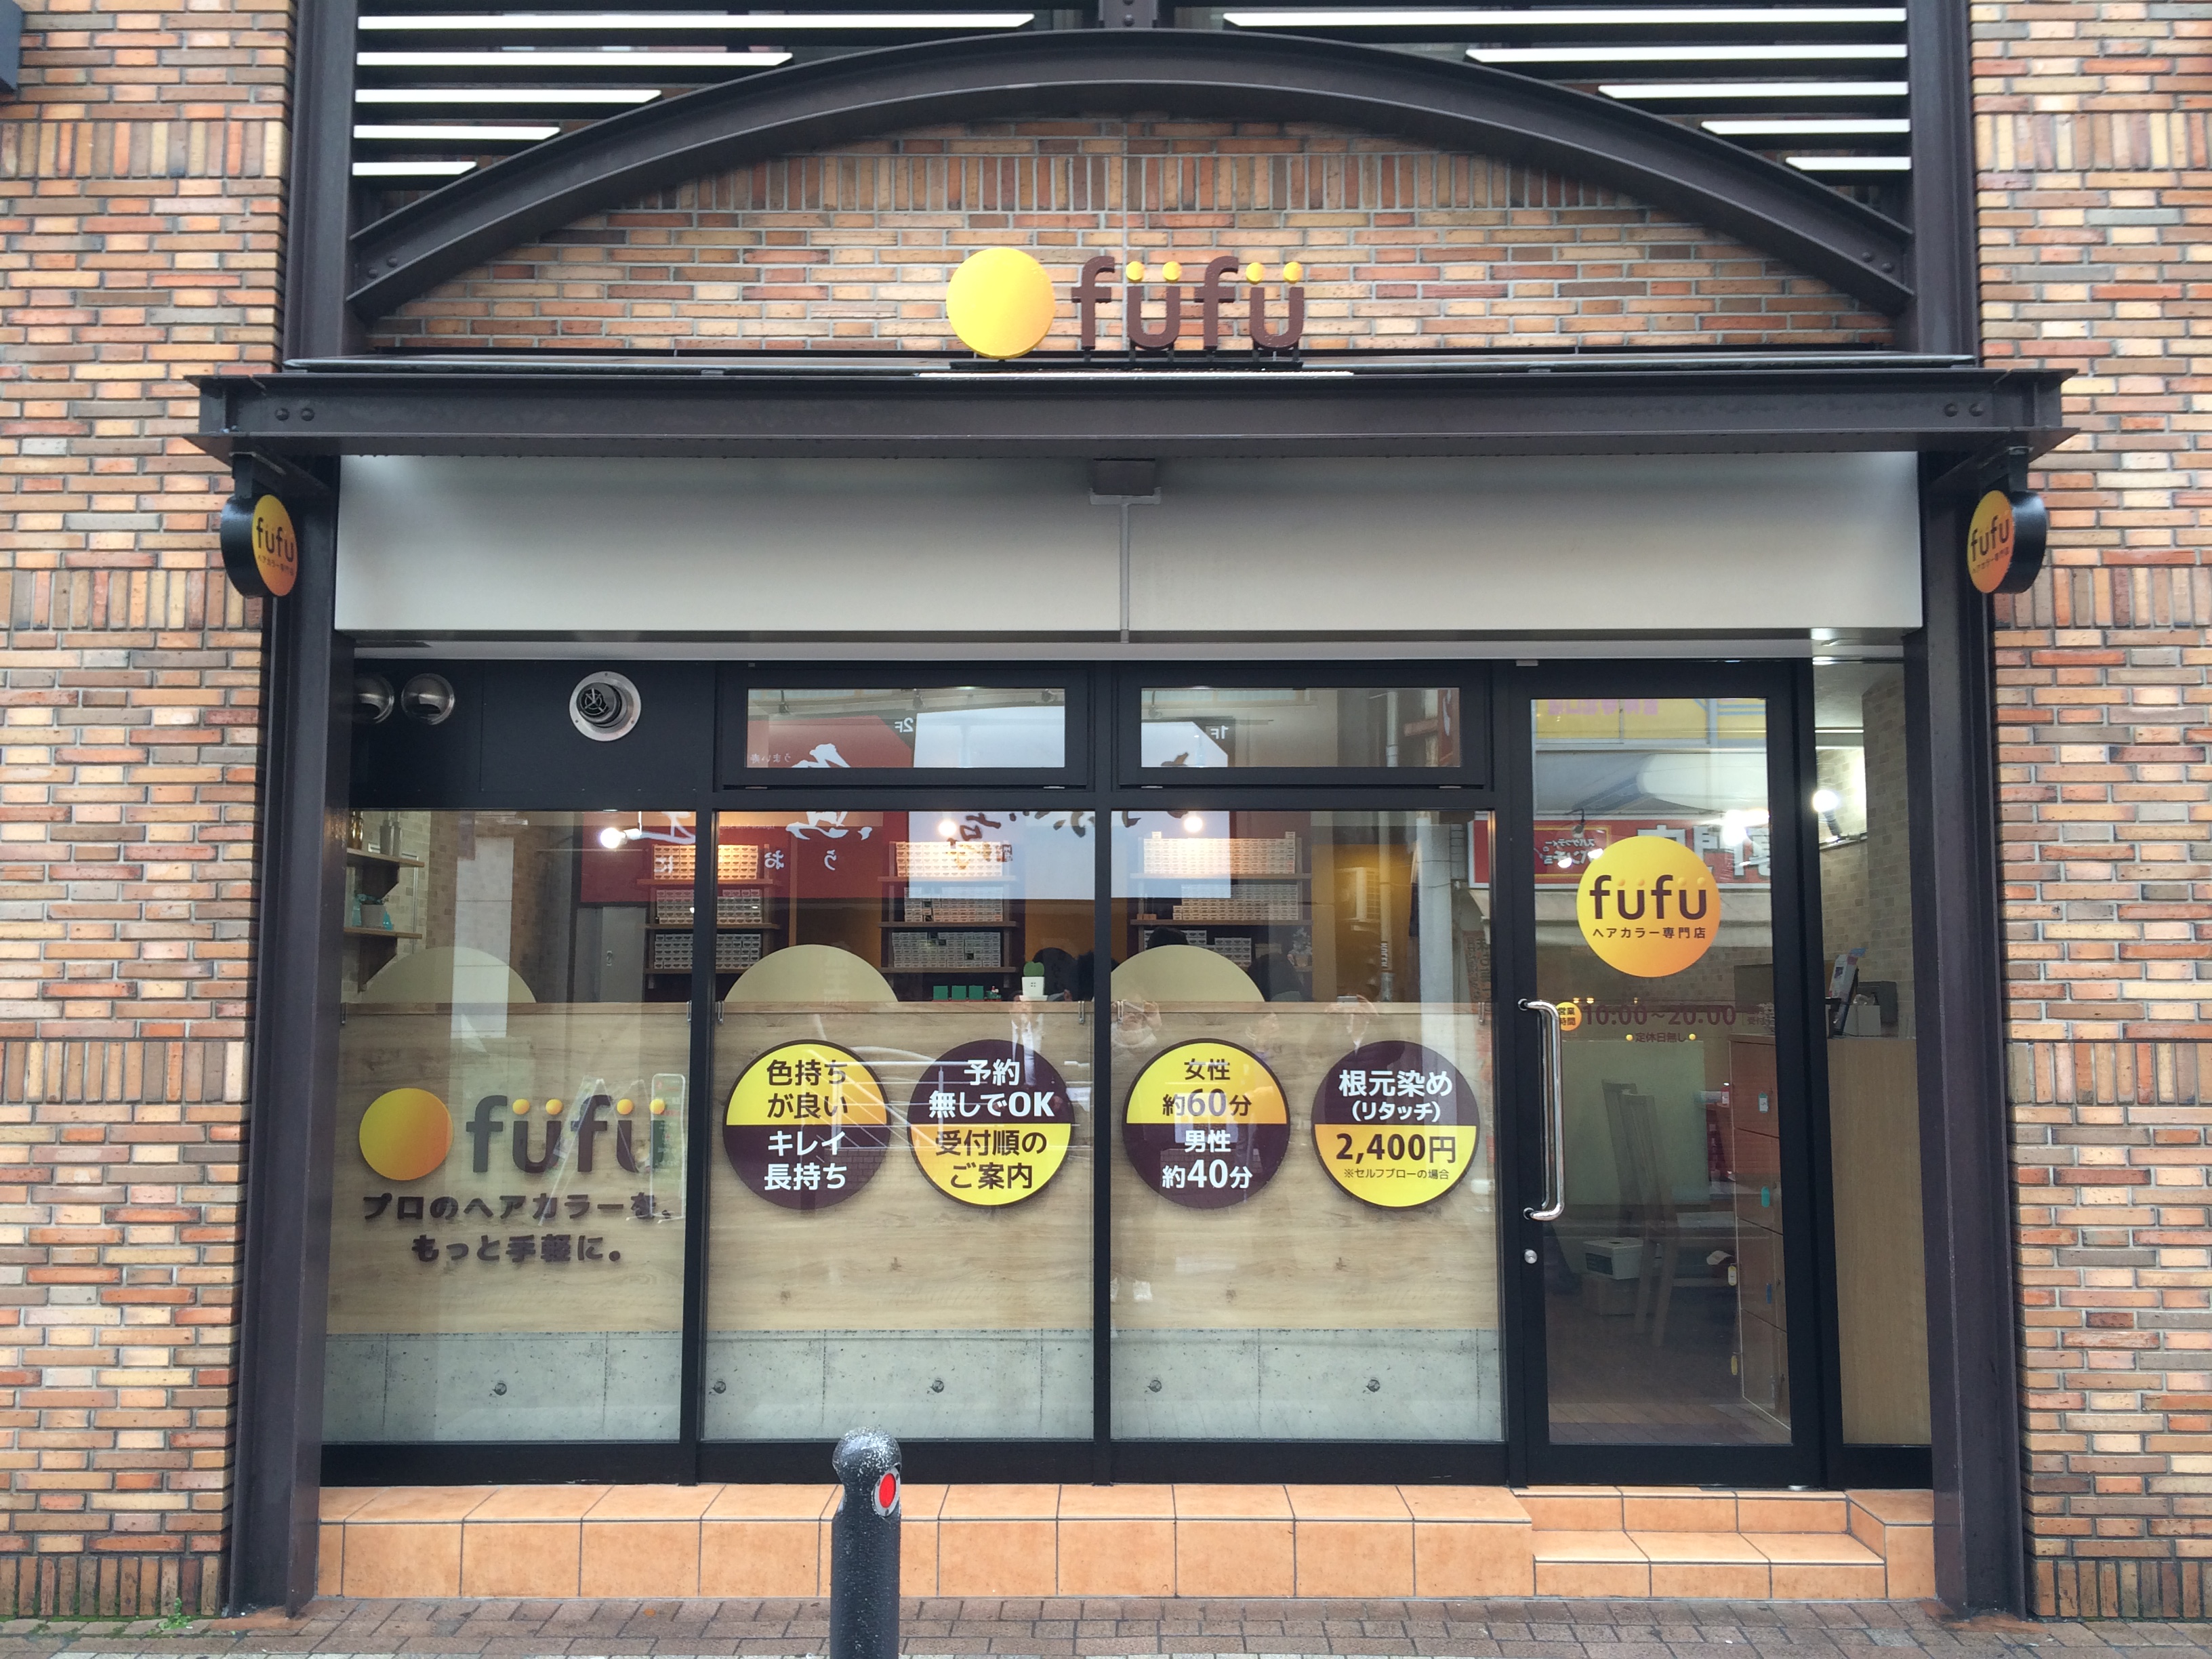 日本全国に展開するヘアカラー専門店「fufu」、医療従事者などへの無料